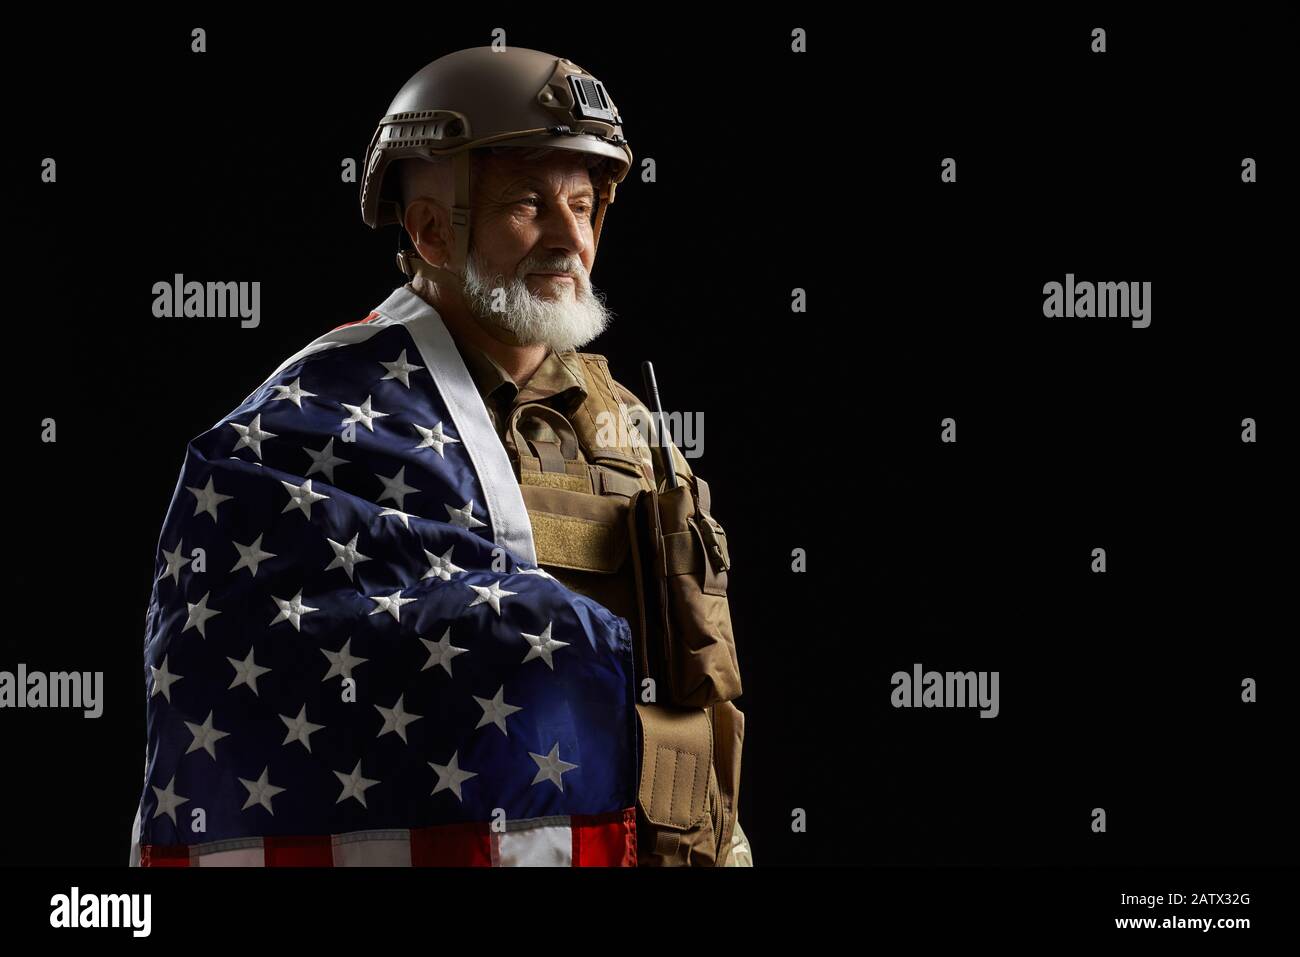 Vista laterale di sorridere militare americano bearded veterano tenendo bandiera sulla spalla. Ritratto di vecchio ufficiale maschile orgoglioso in uniforme camouflage posa in un'atmosfera buia. Concetto di militare, esercito. Foto Stock